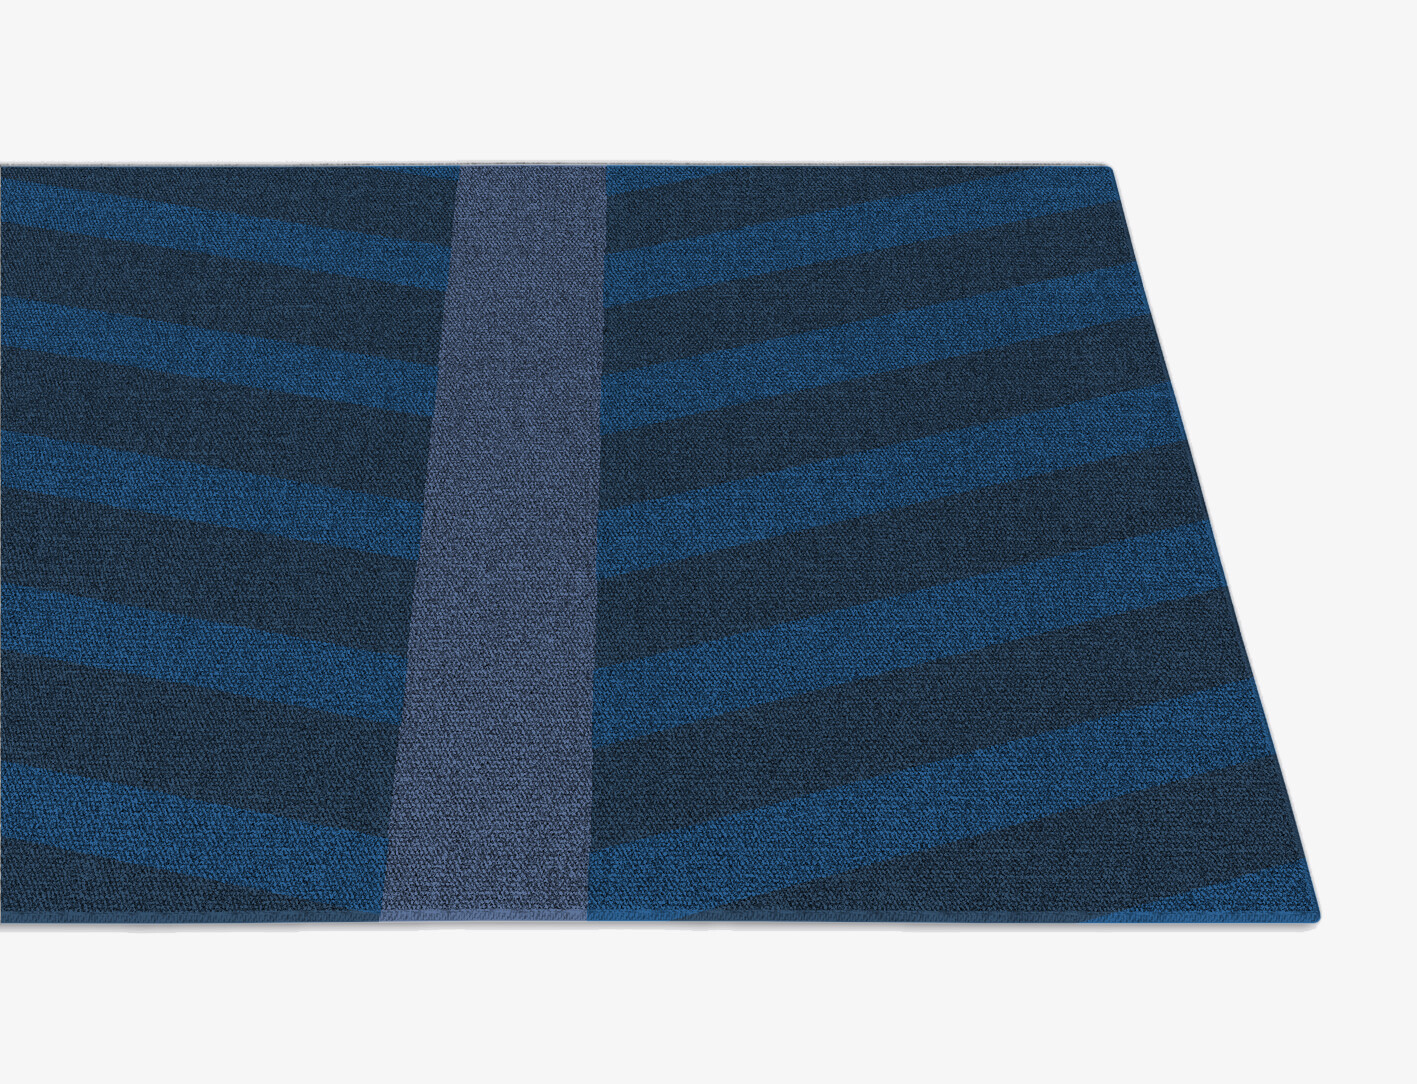 Steps Geometric Runner Flatweave New Zealand Wool Custom Rug by Rug Artisan